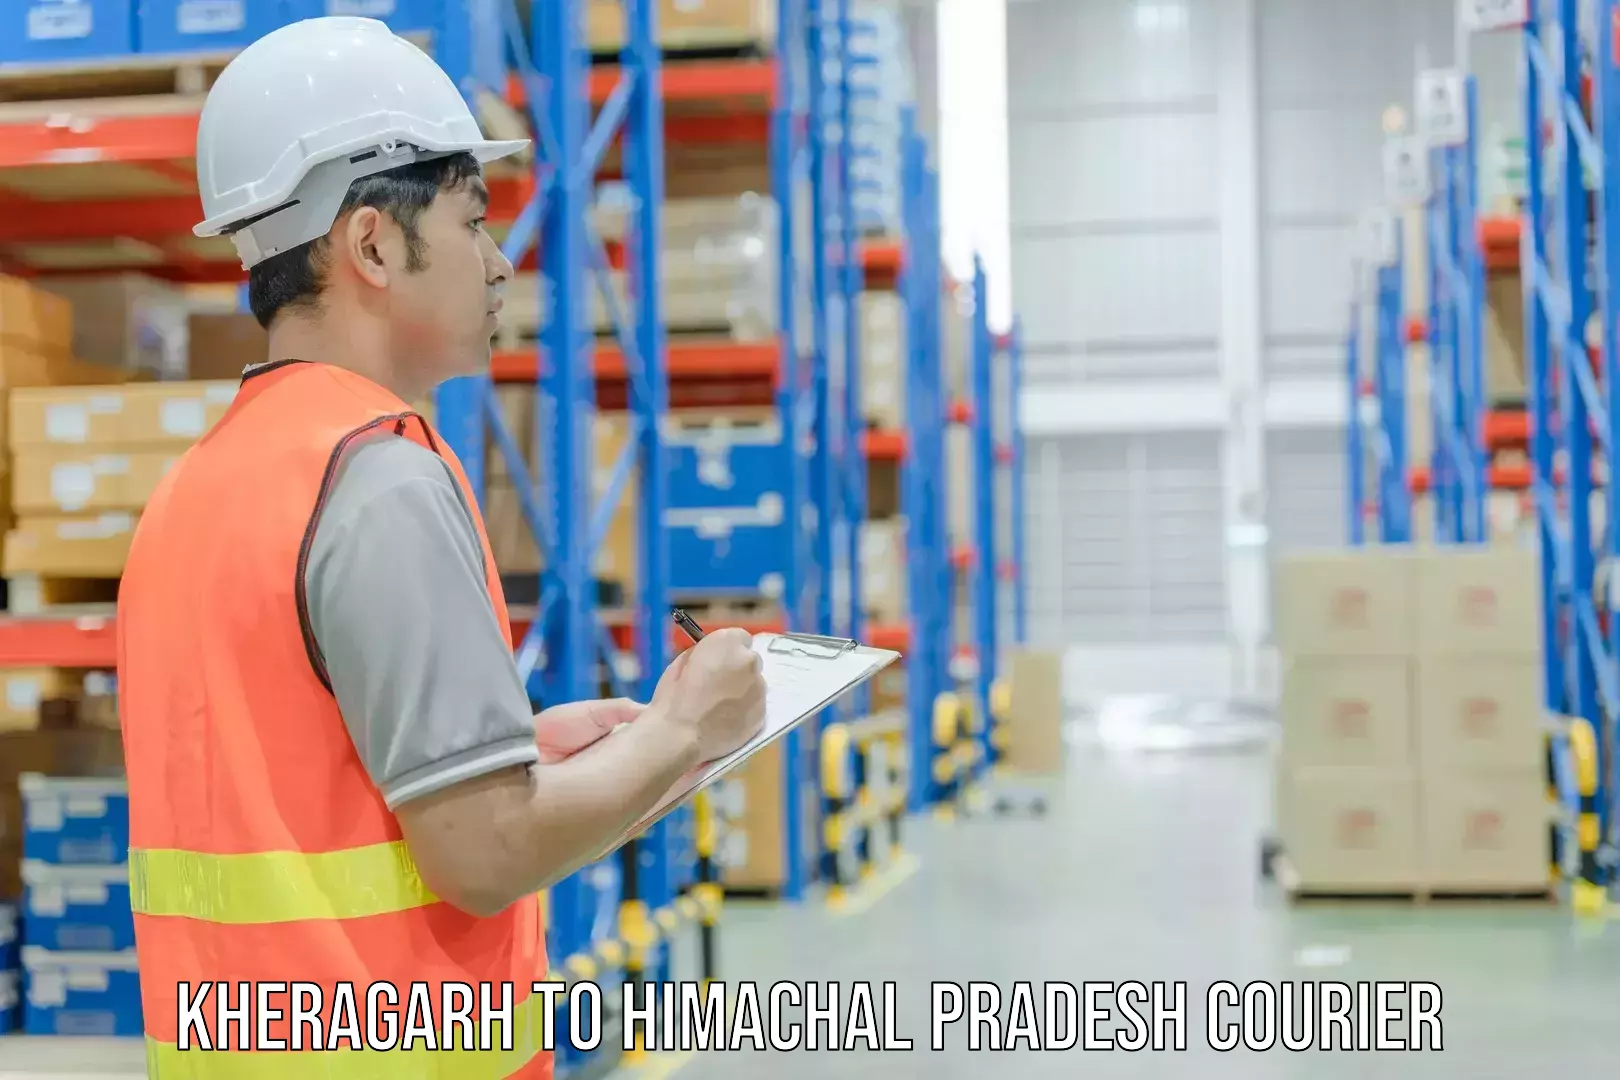 Cargo delivery service Kheragarh to Himachal Pradesh